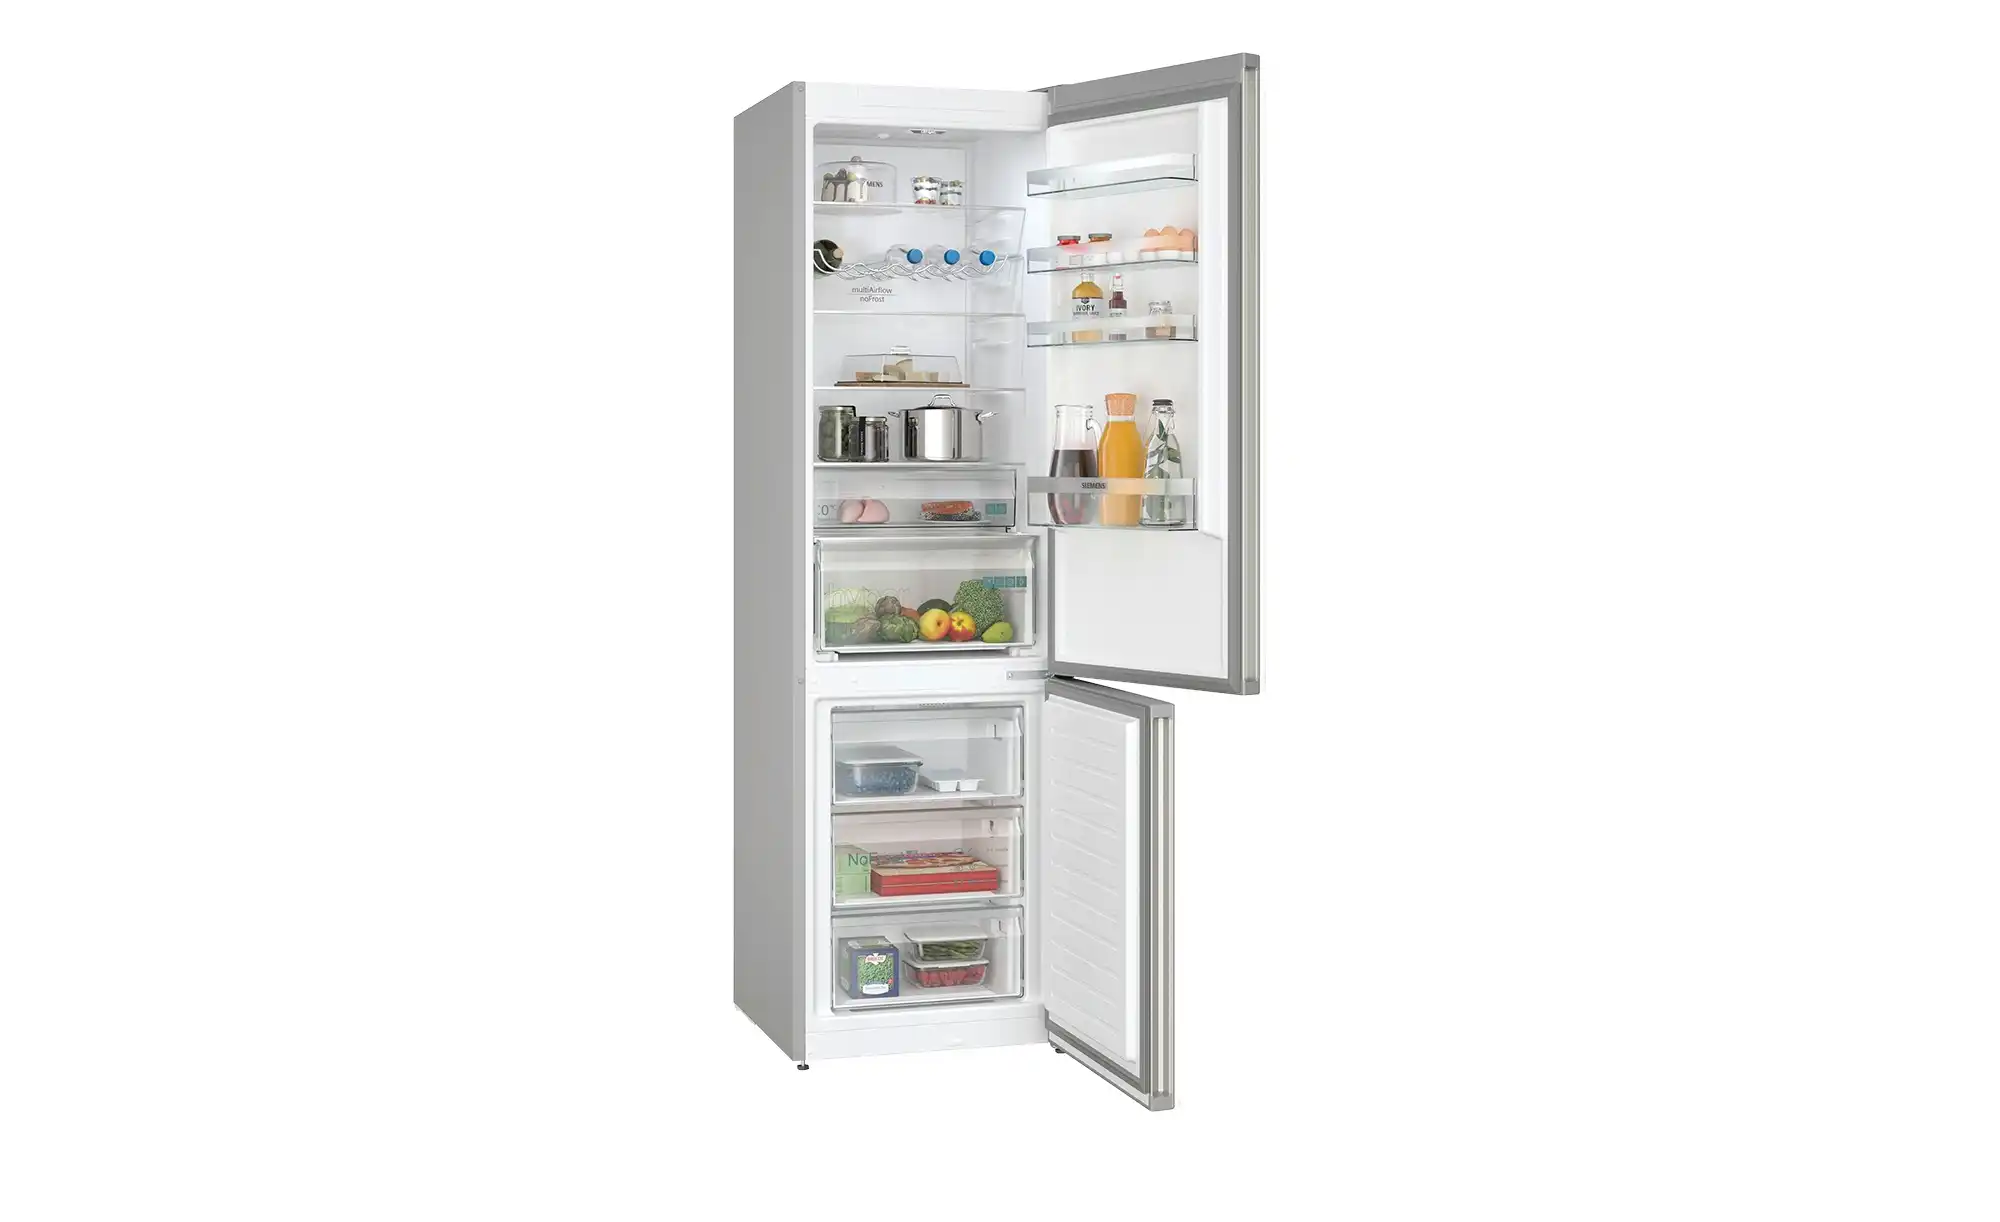 Zoom-Ansicht für Kühlschrank-Alarm - Bild 2